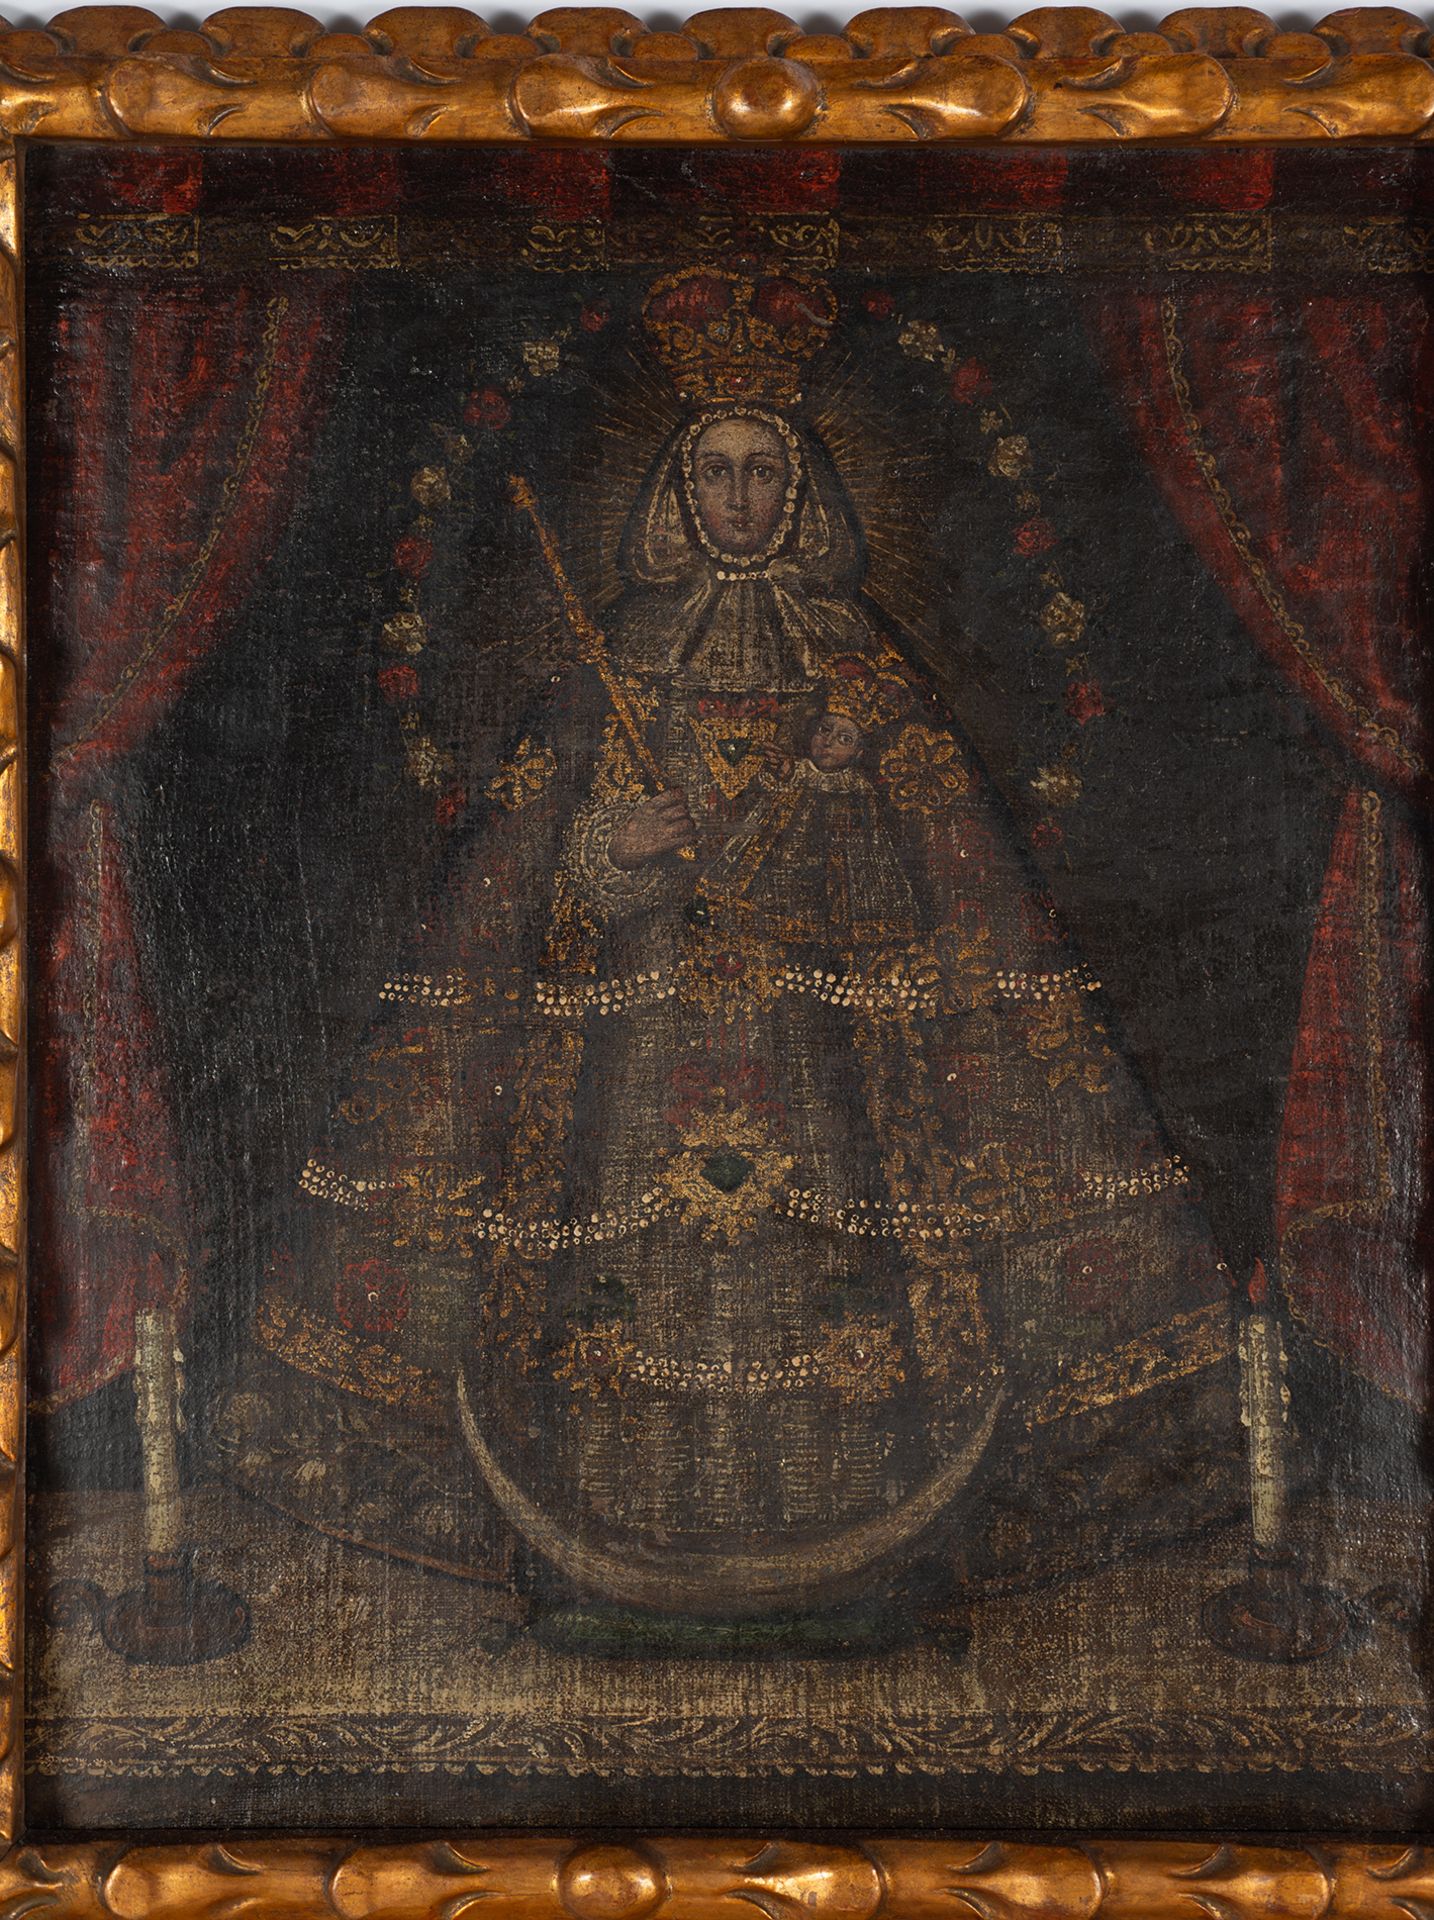 Virgen de la Candelaria, Cuzco colonial school from the 17th century - Image 2 of 7